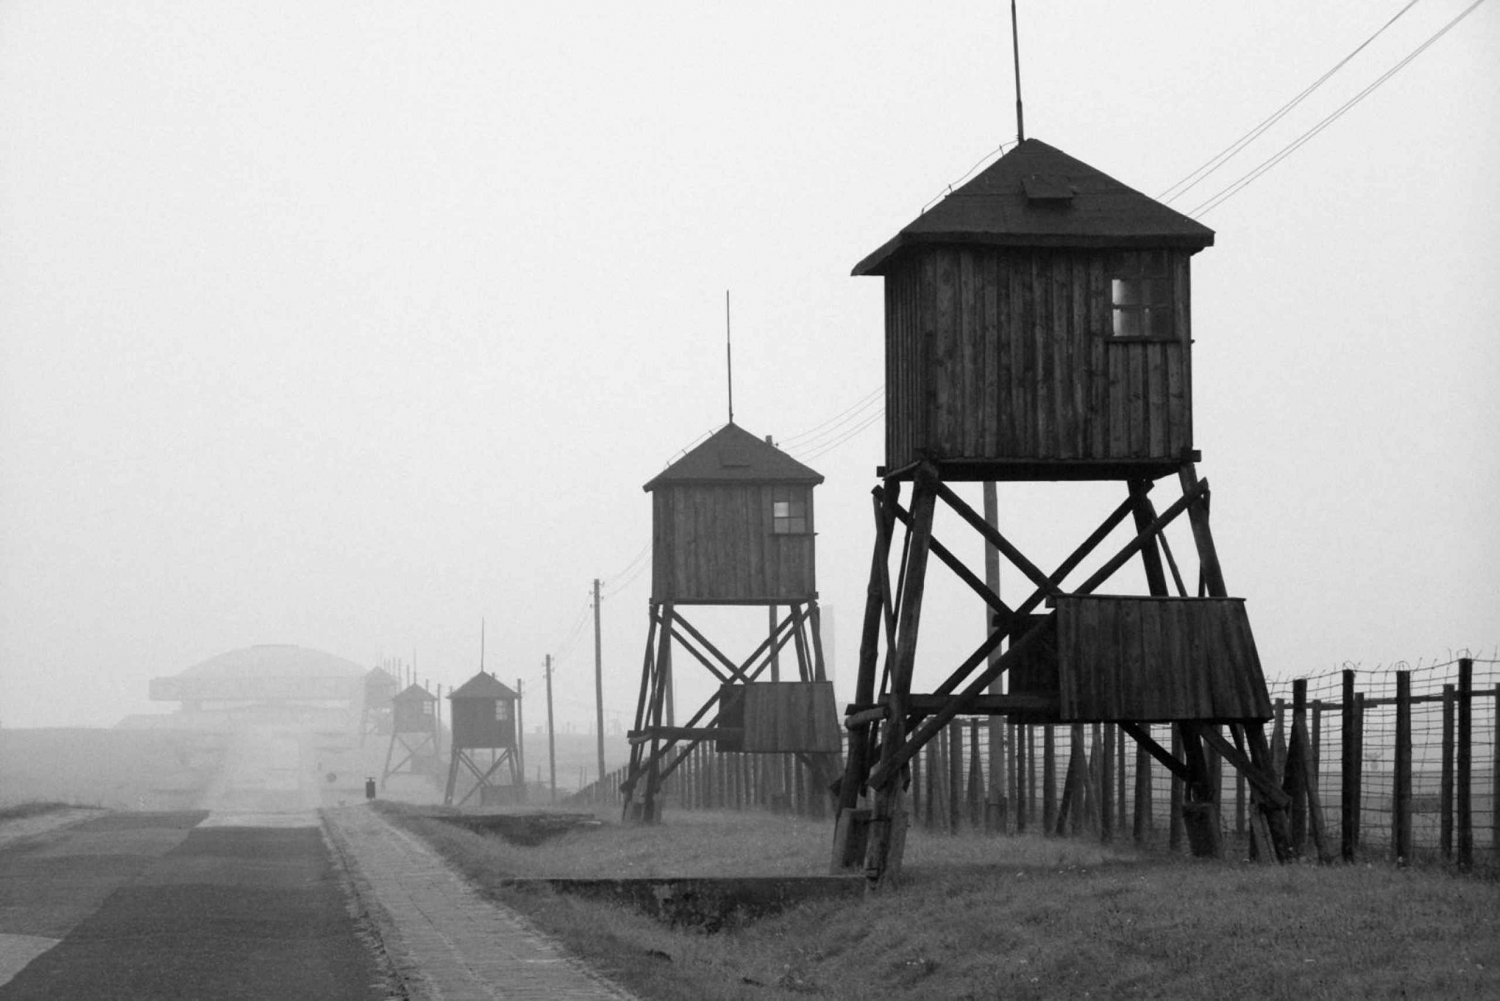 Warszawa: Obóz Koncentracyjny Majdanek, Lublin 1-dniowa wycieczka samochodem